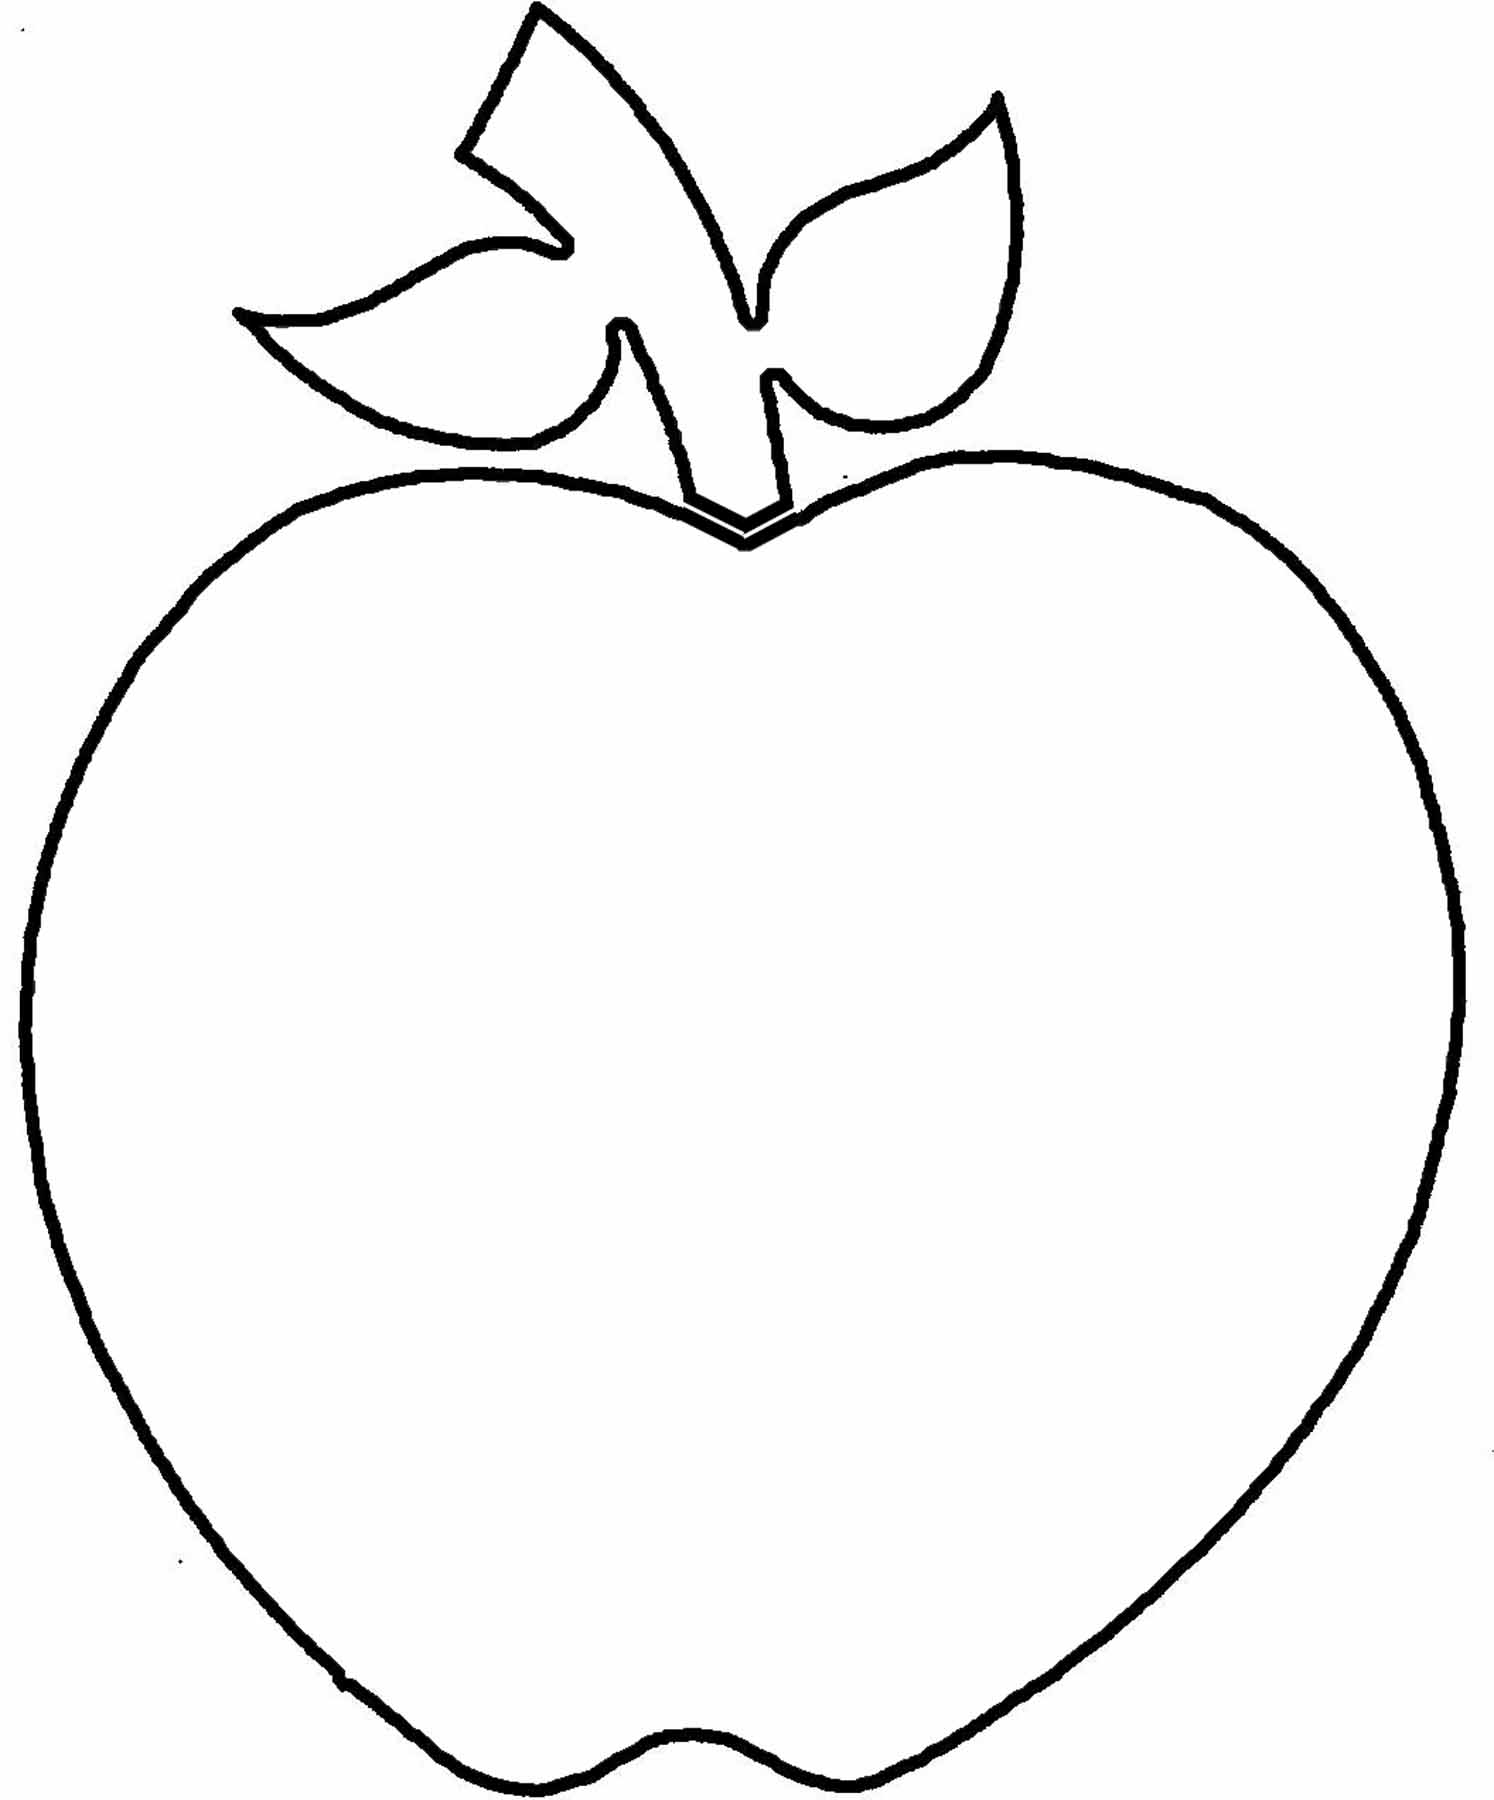 apple outline clip art - photo #19